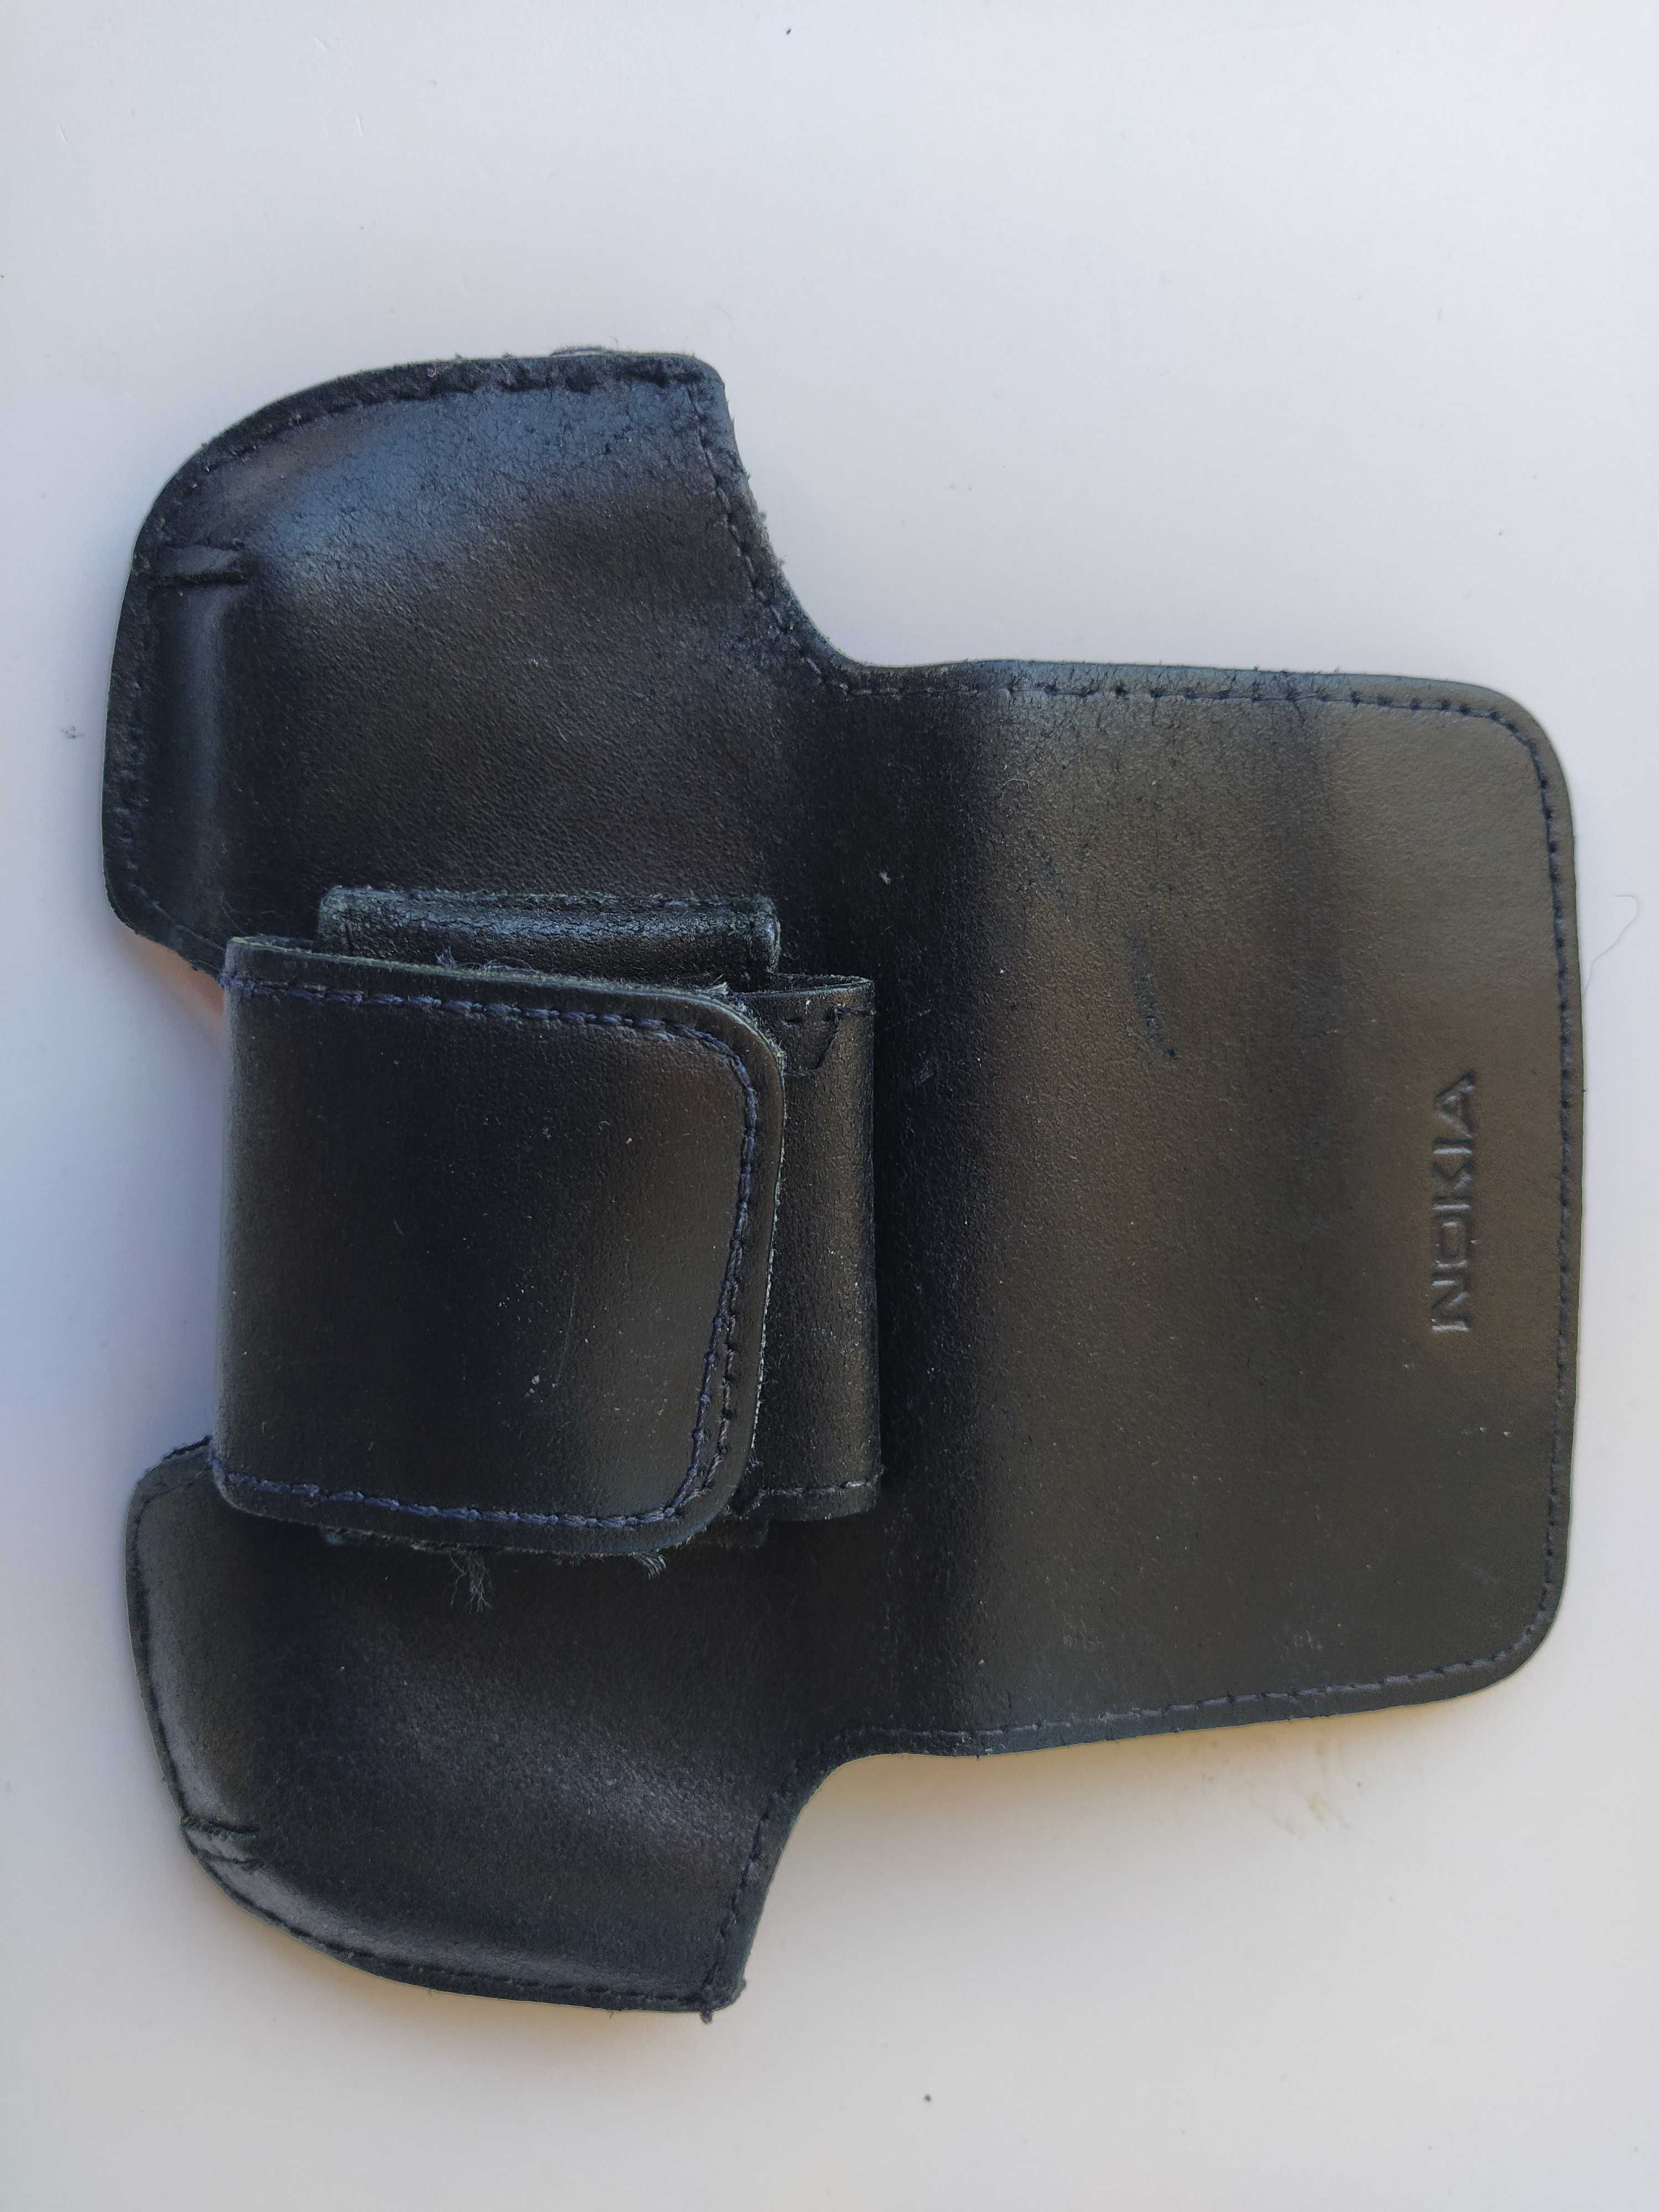 Bolsa Telemovel Pele - Nokia – Para trazer na cintura